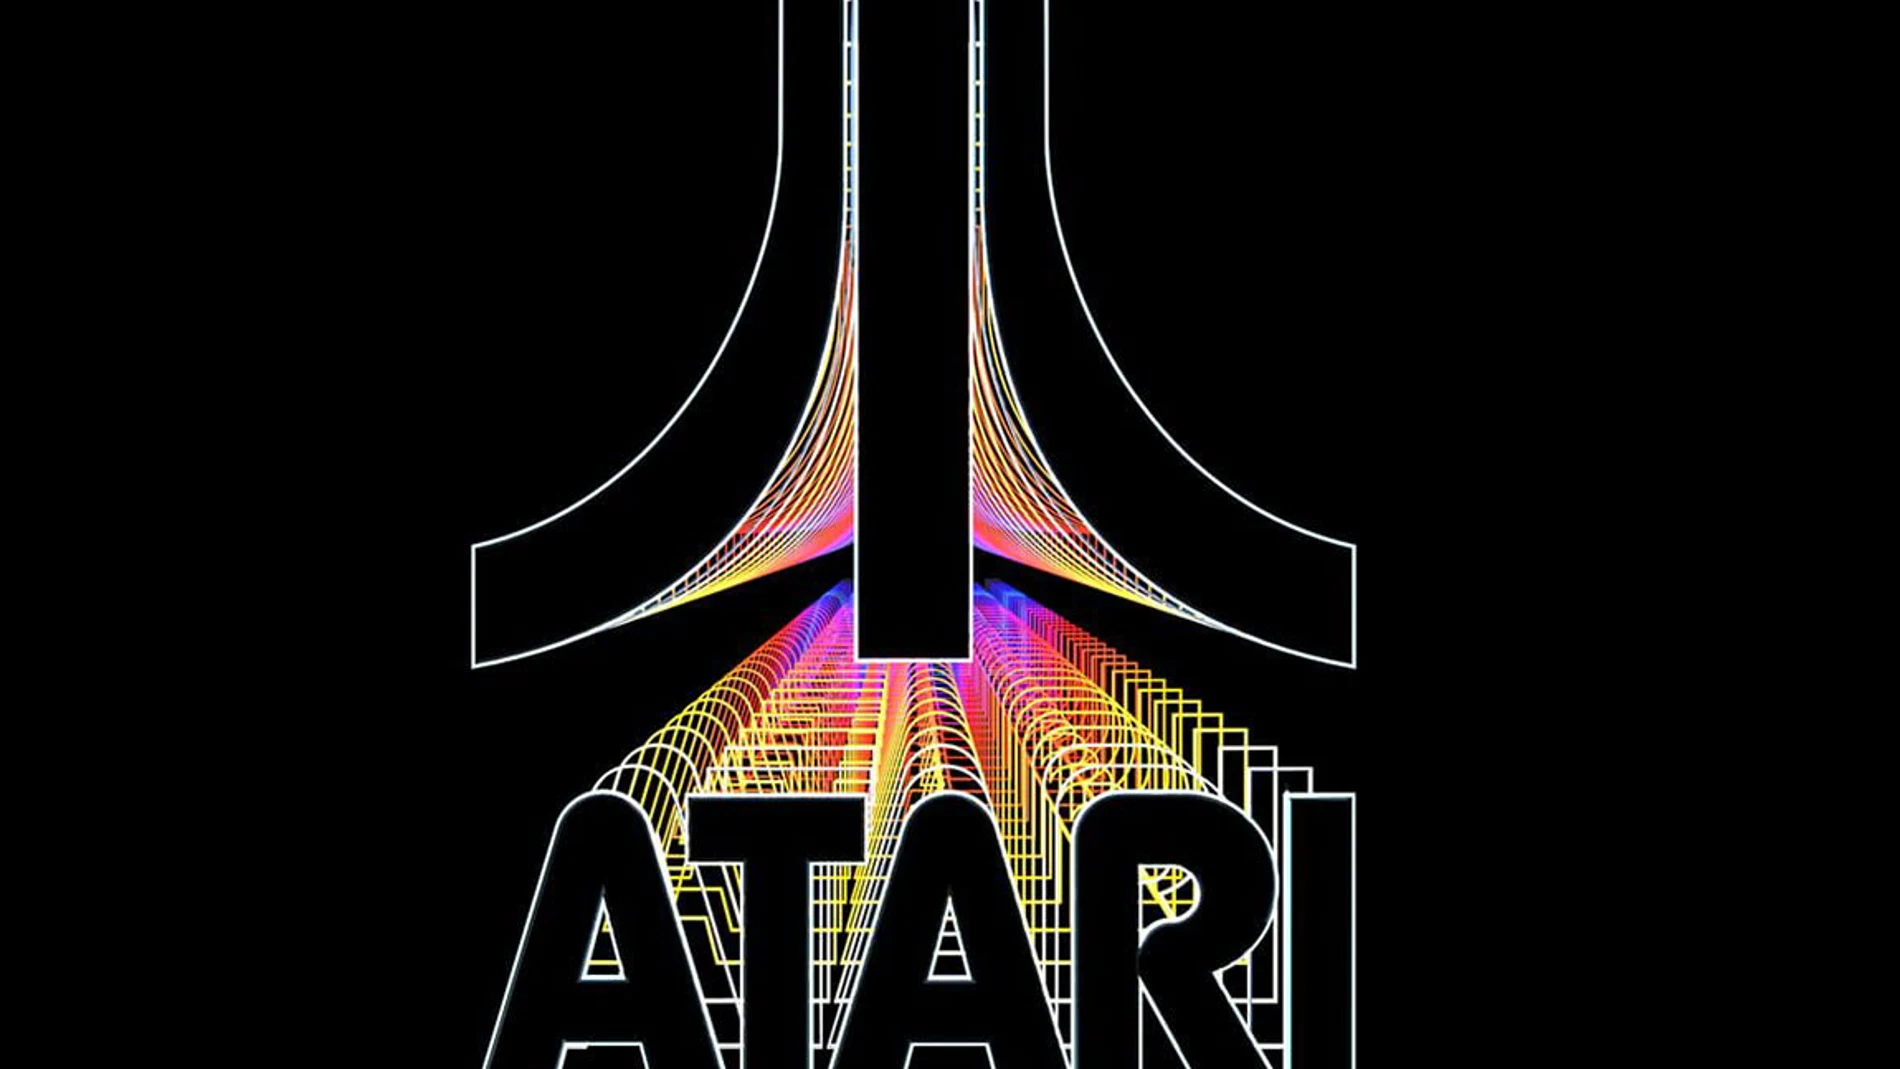 La historia de Atari se convertirá en un programa de televisión con invitados famosos